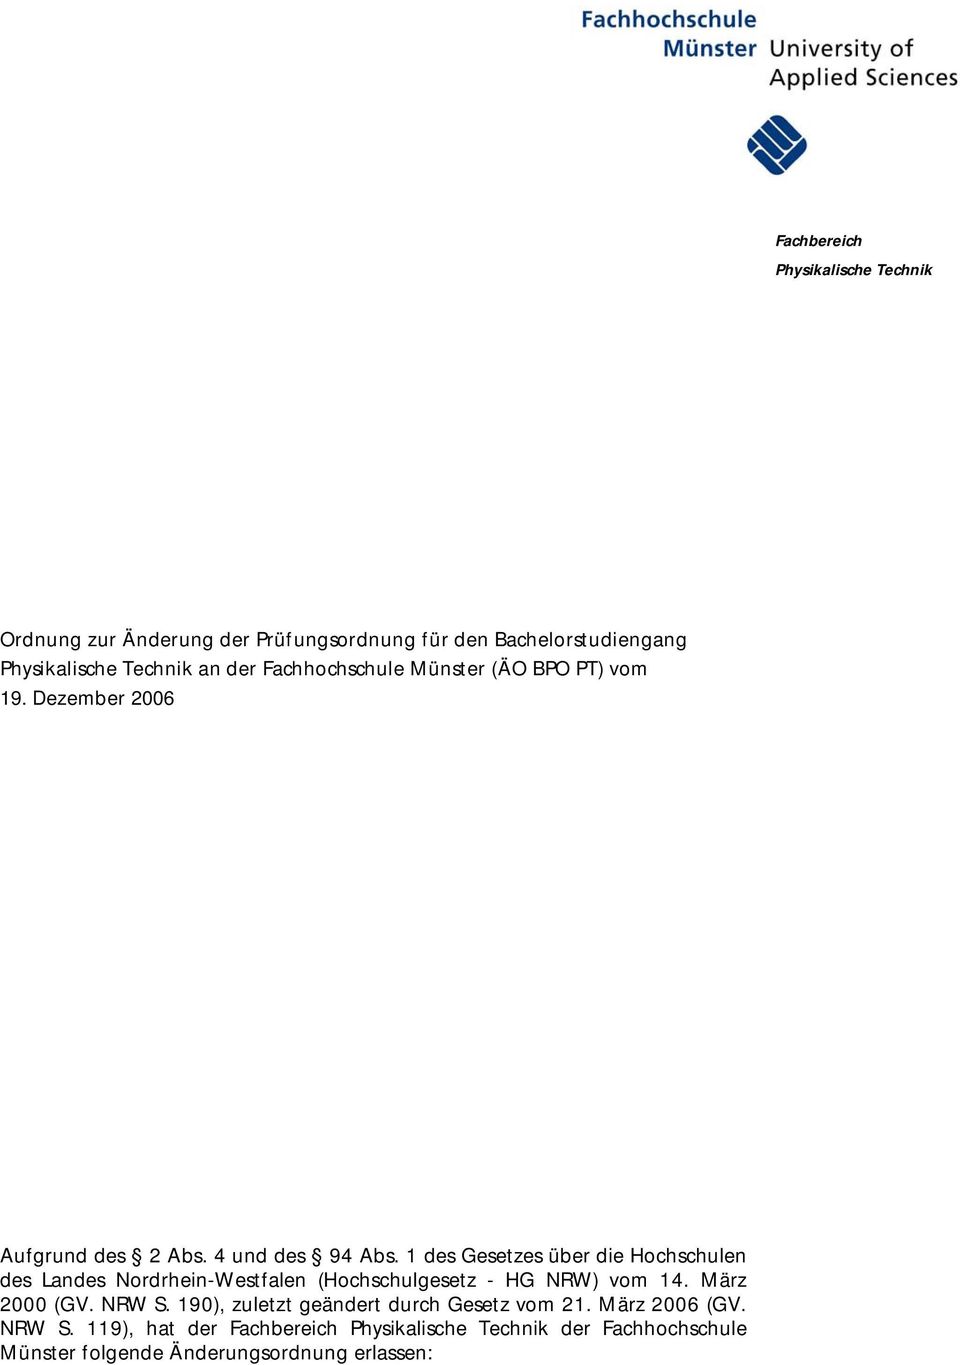 1 des Gesetzes über die Hochschulen des Landes Nordrhein-Westfalen (Hochschulgesetz - HG NRW) vom 14. März 2000 (GV. NRW S.